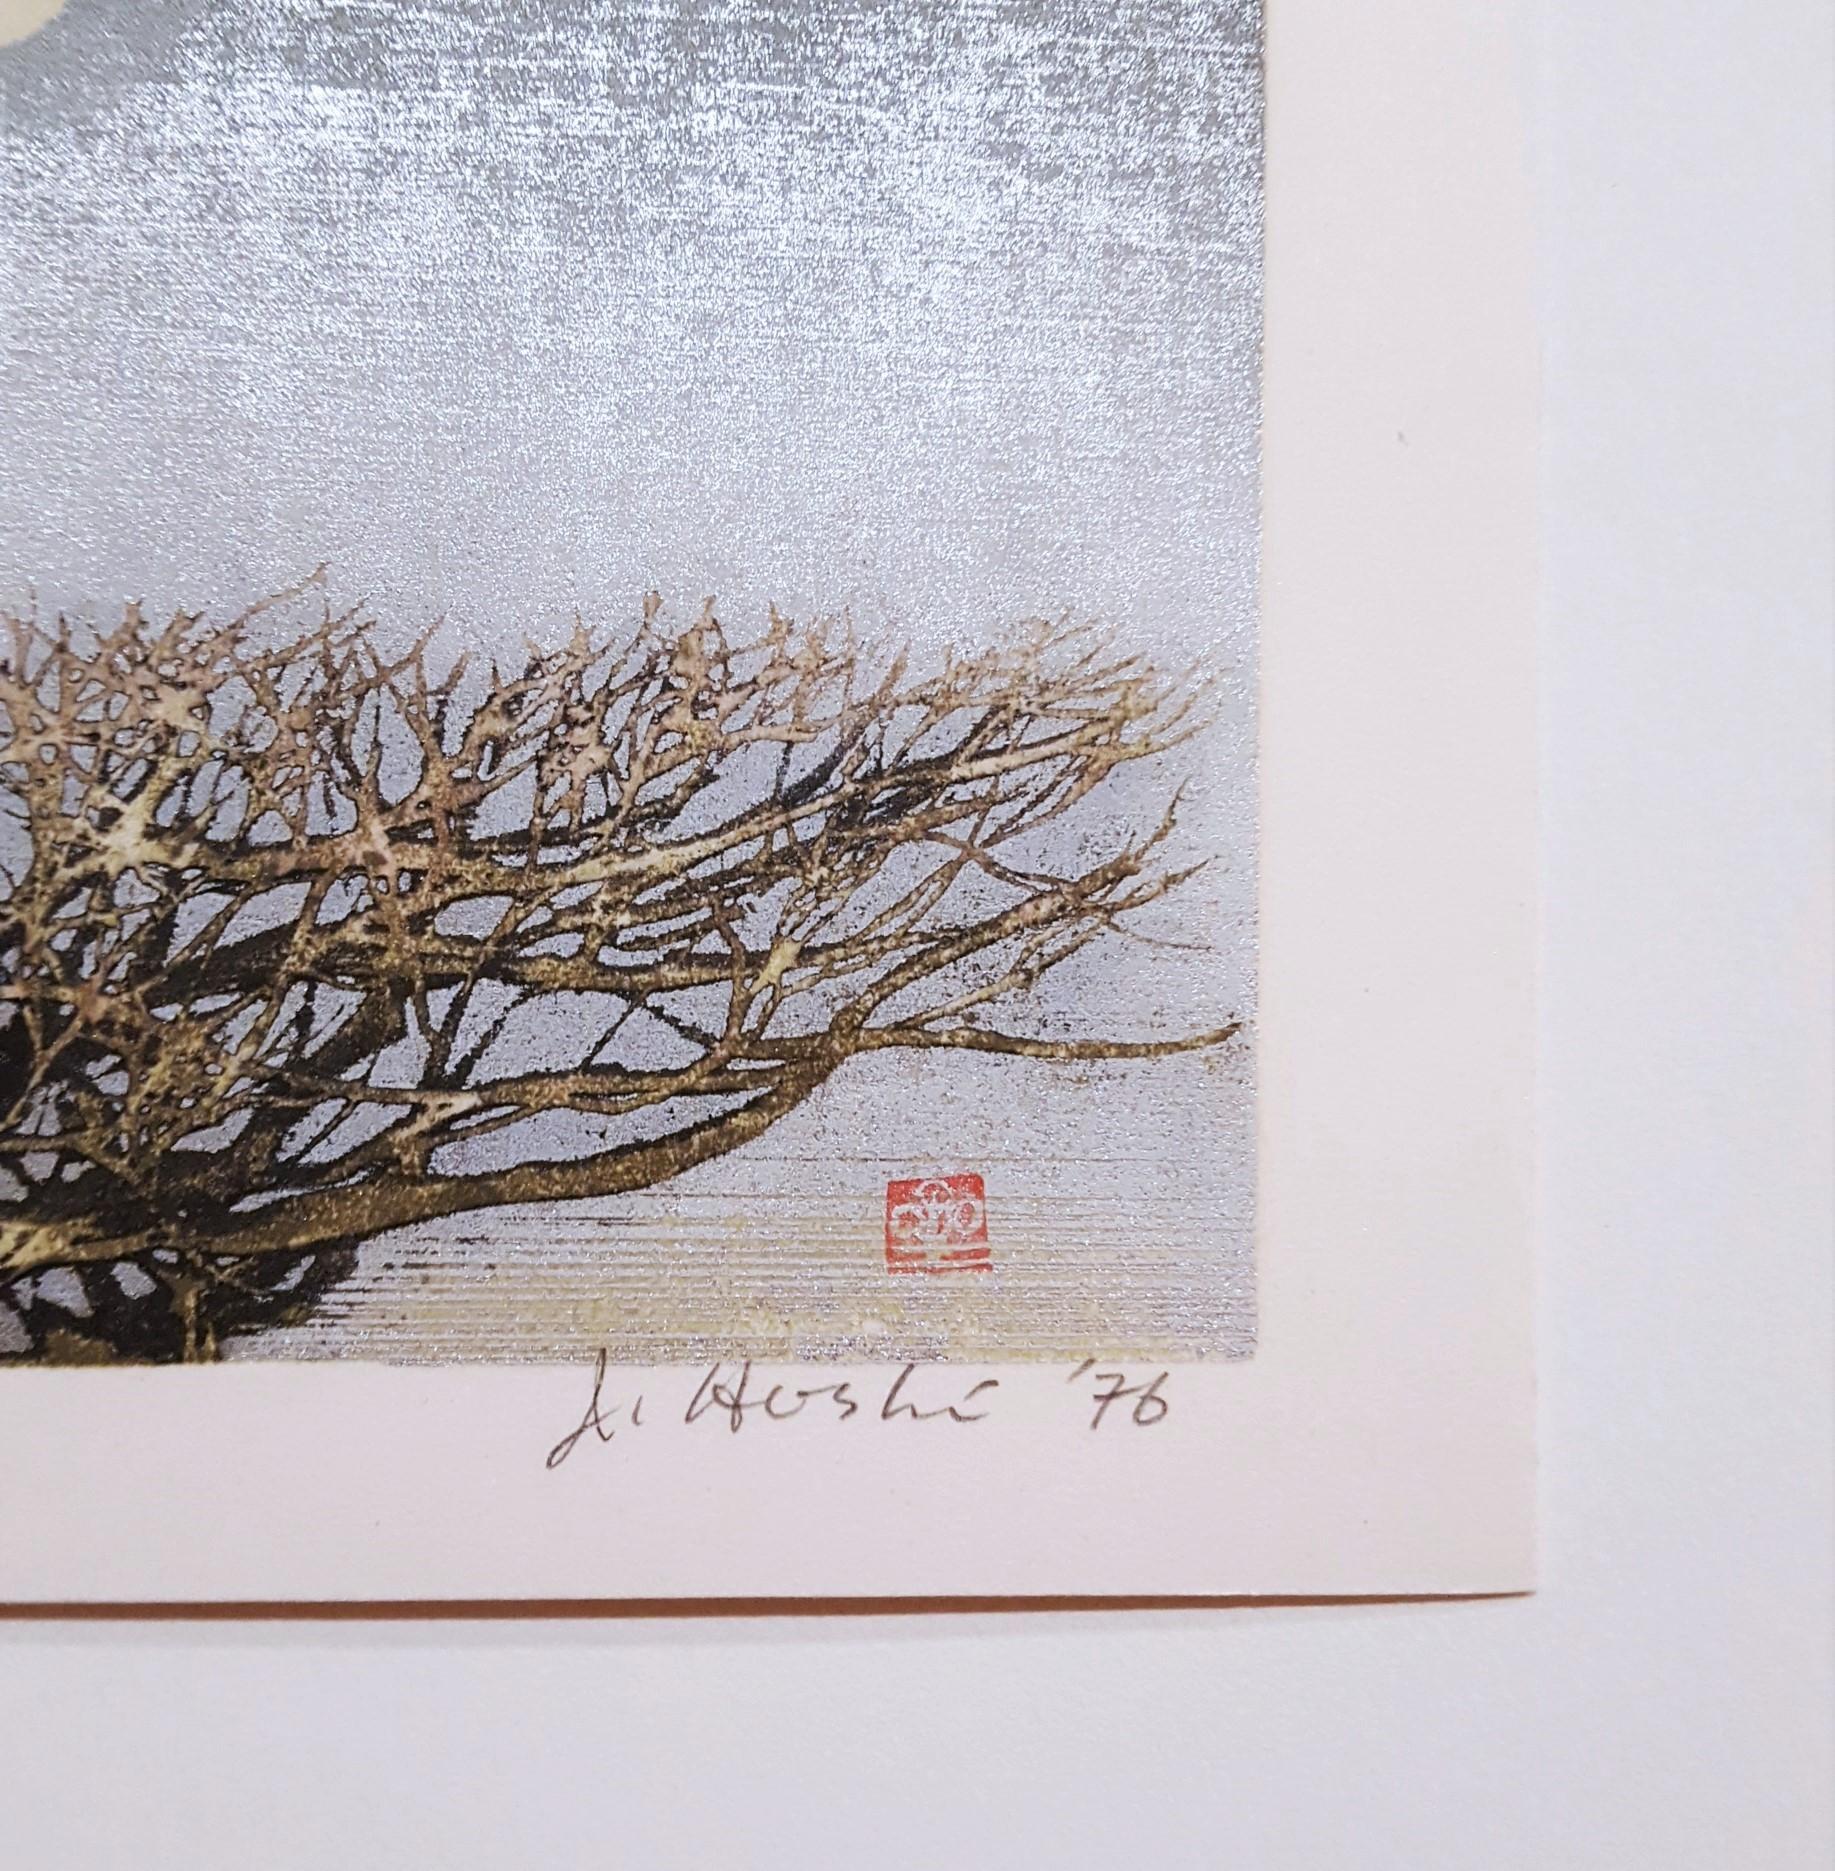 Spring Moon (Haru no tsuki) - Contemporary Print by Joichi Hoshi